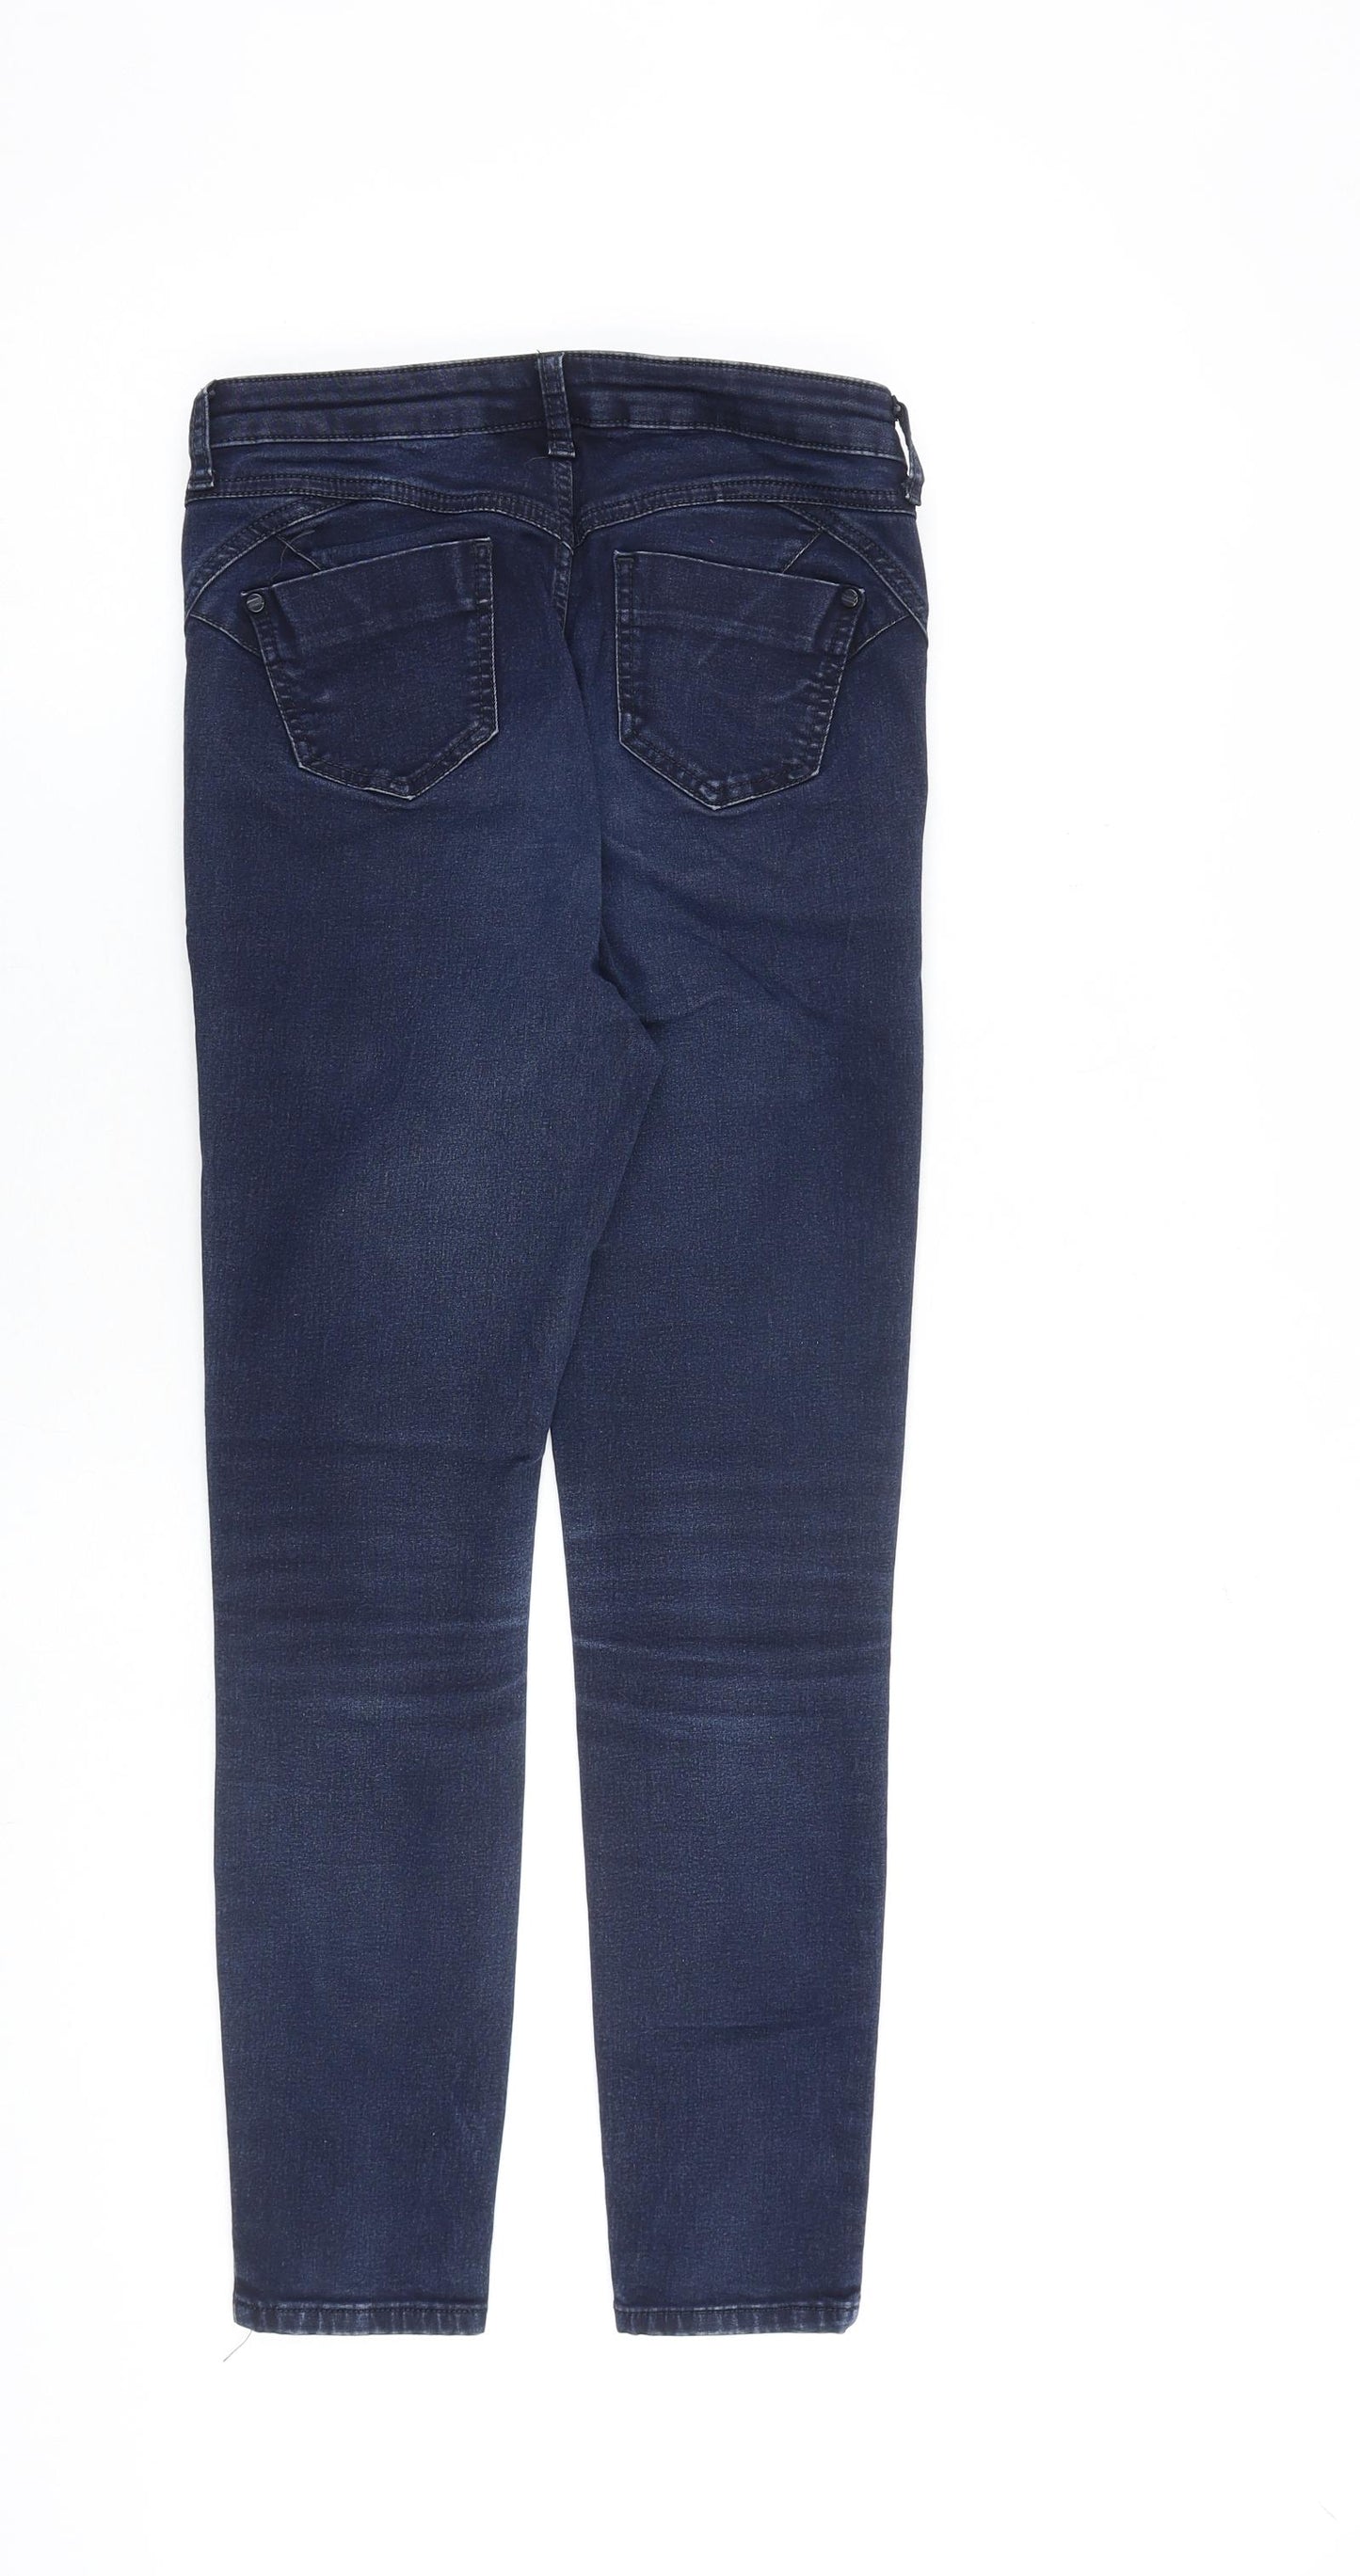 Per Una Womens Blue Cotton Skinny Jeans Size 27 in L27 in Slim Zip